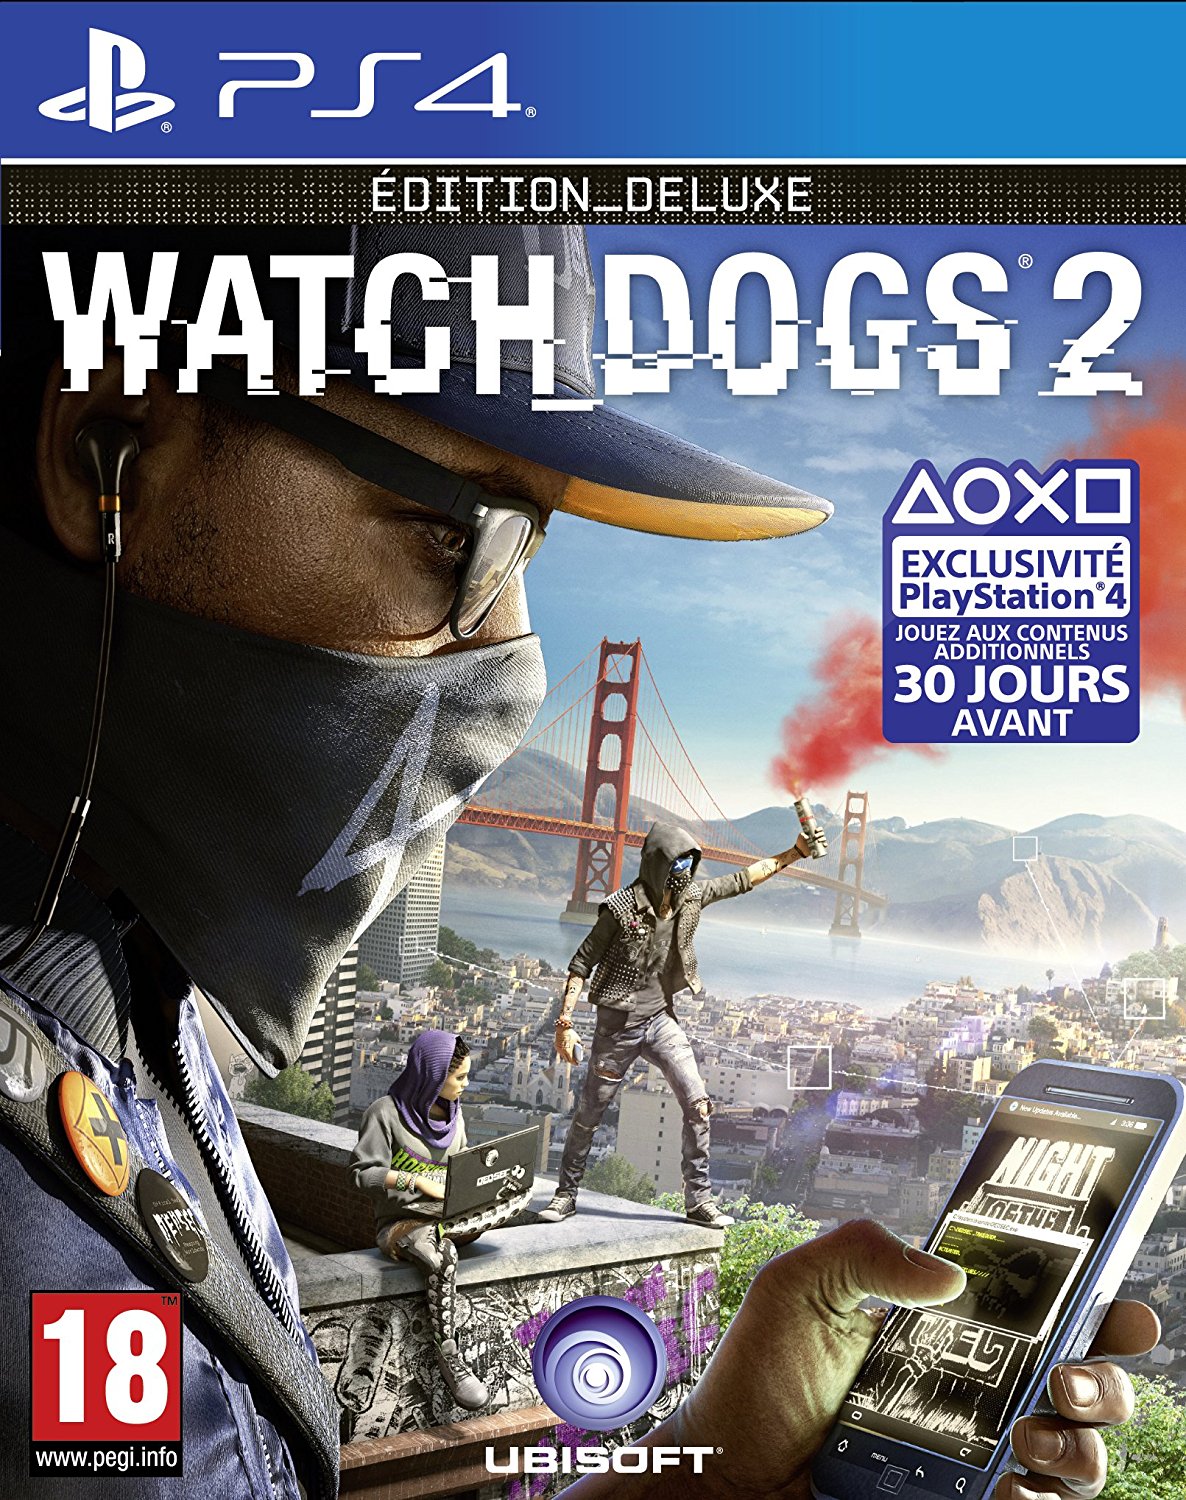 Jeu PS4 pas cher, Watch Dogs 2 - Deluxe Edition, Jeu vidéo Amazon